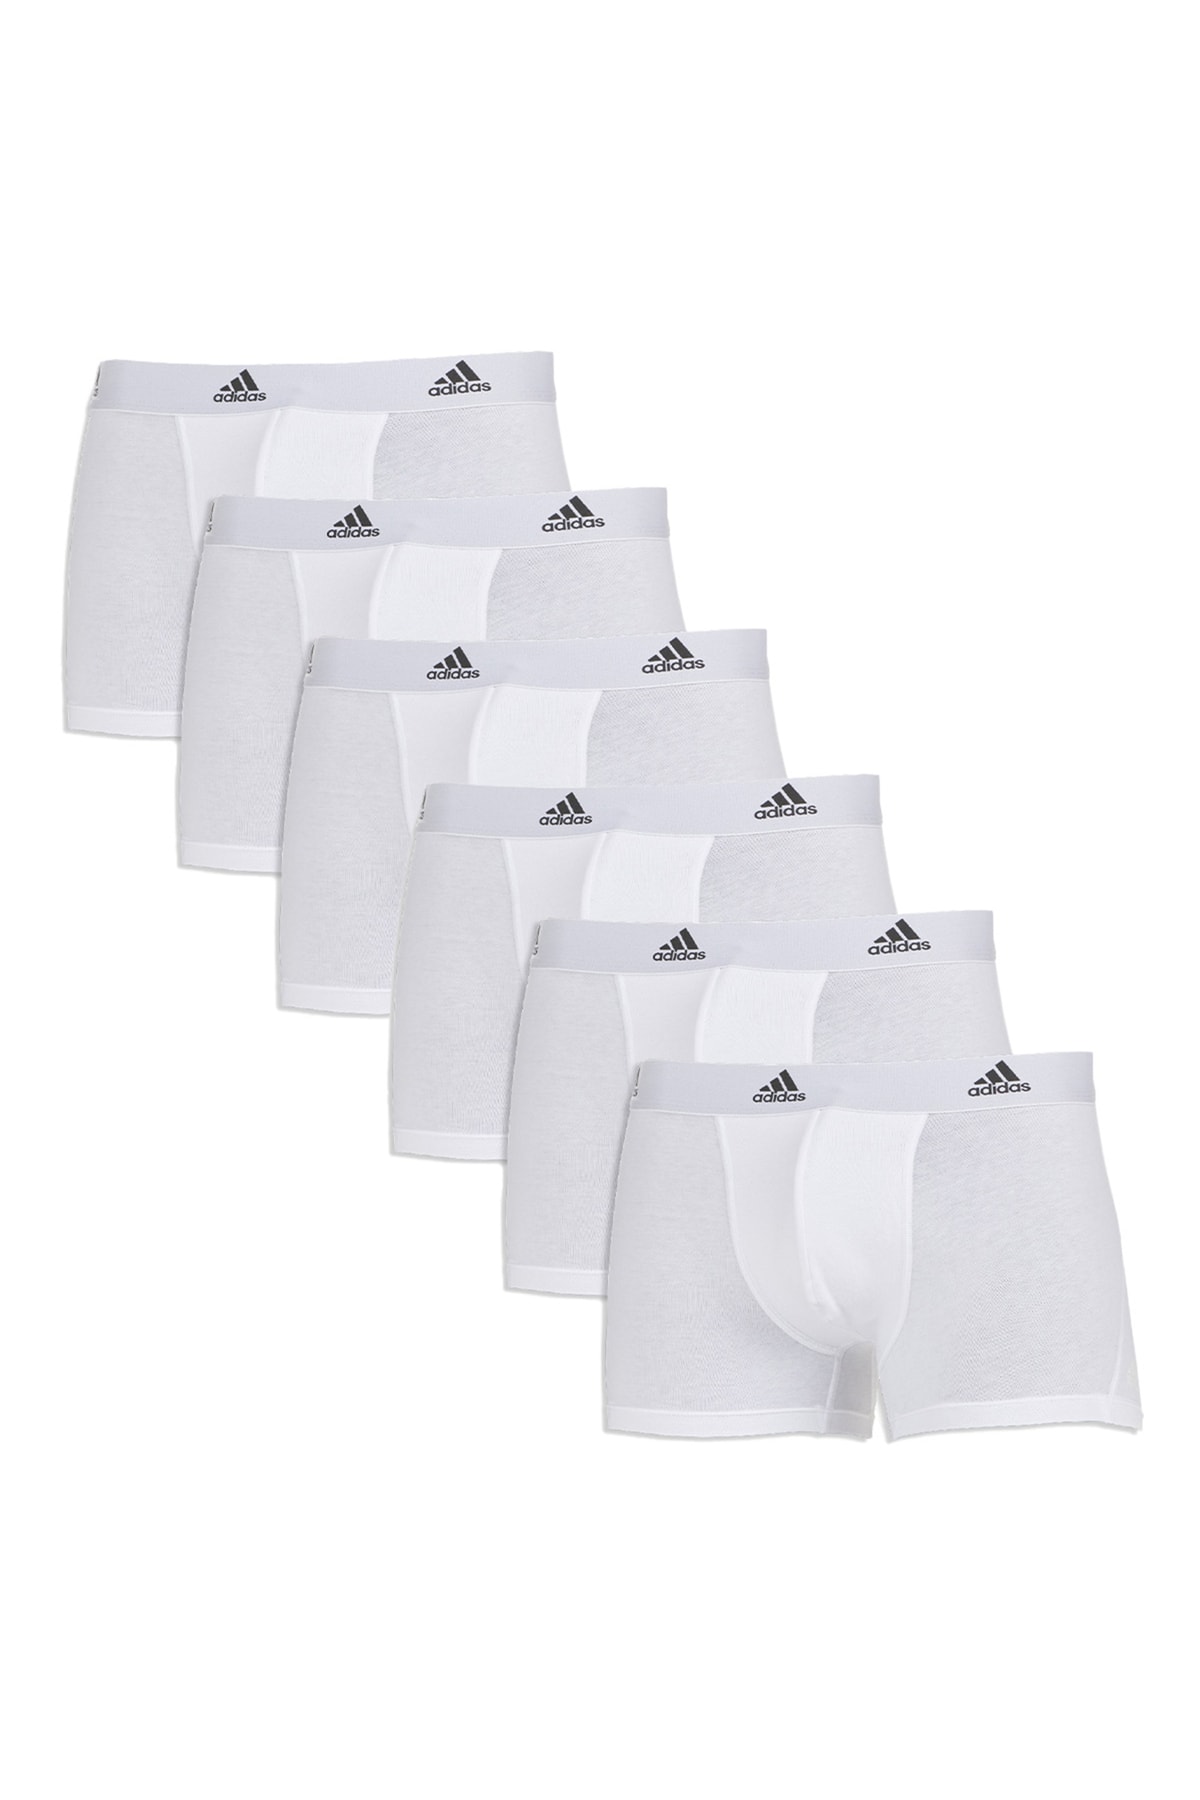 Adidas Sportswear Boxershorts Weiß 6er-Pack Fast ausverkauft